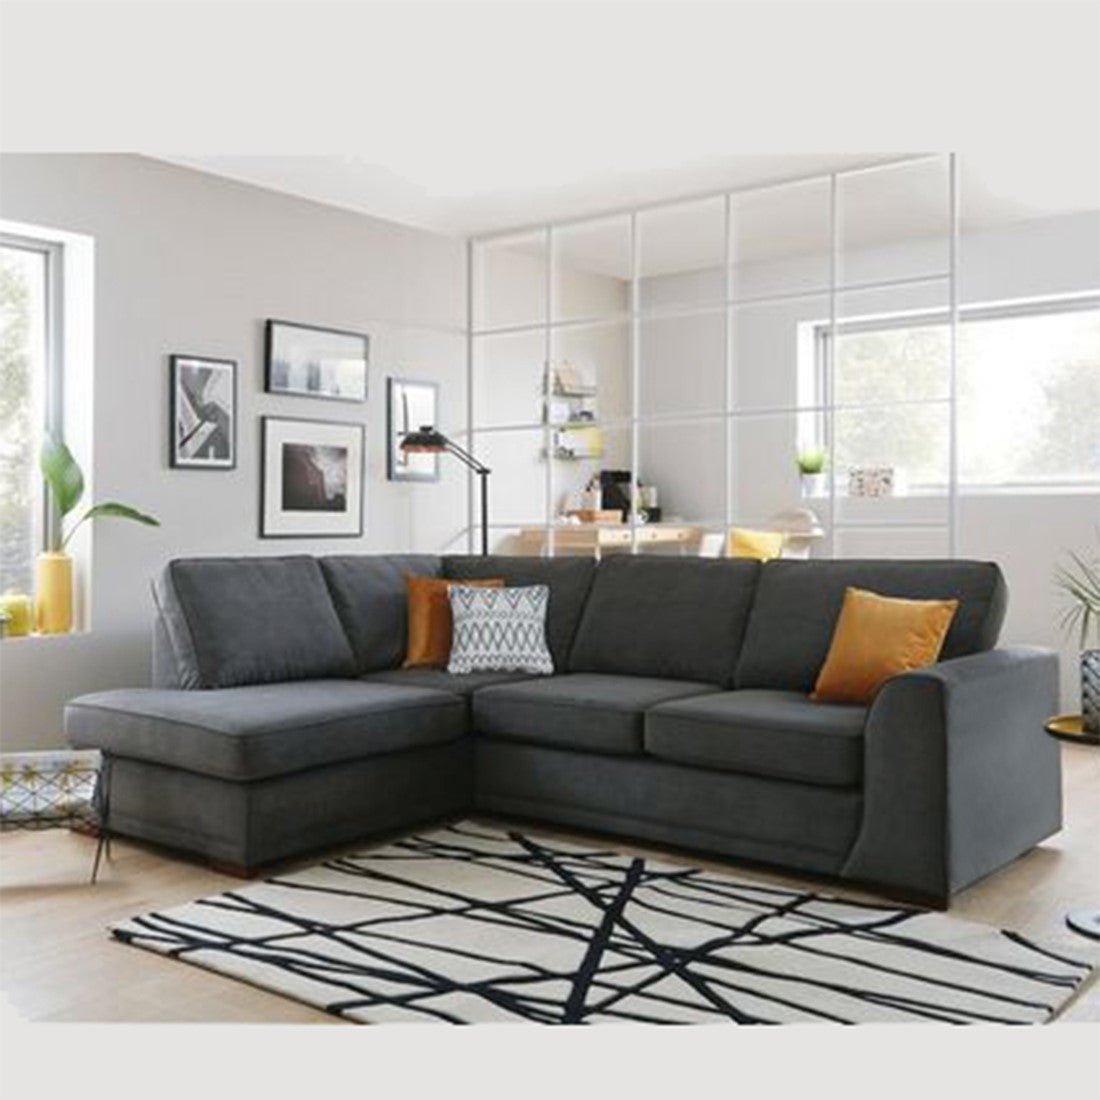 Sofia 5 Seater Fabric Sofa For Living